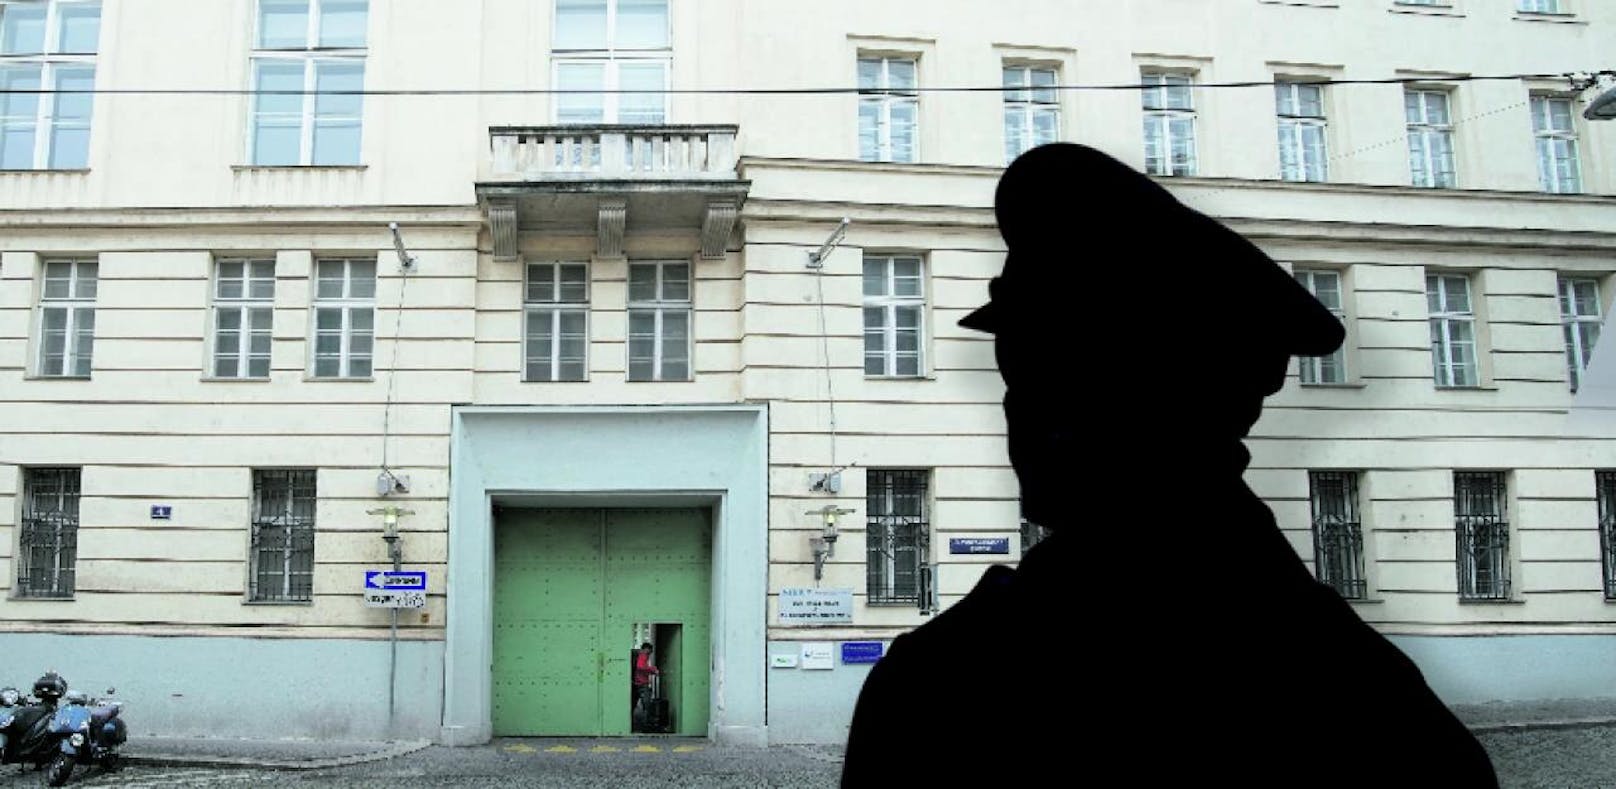 Vergewaltigung in Polizeischule – Wiener geht frei